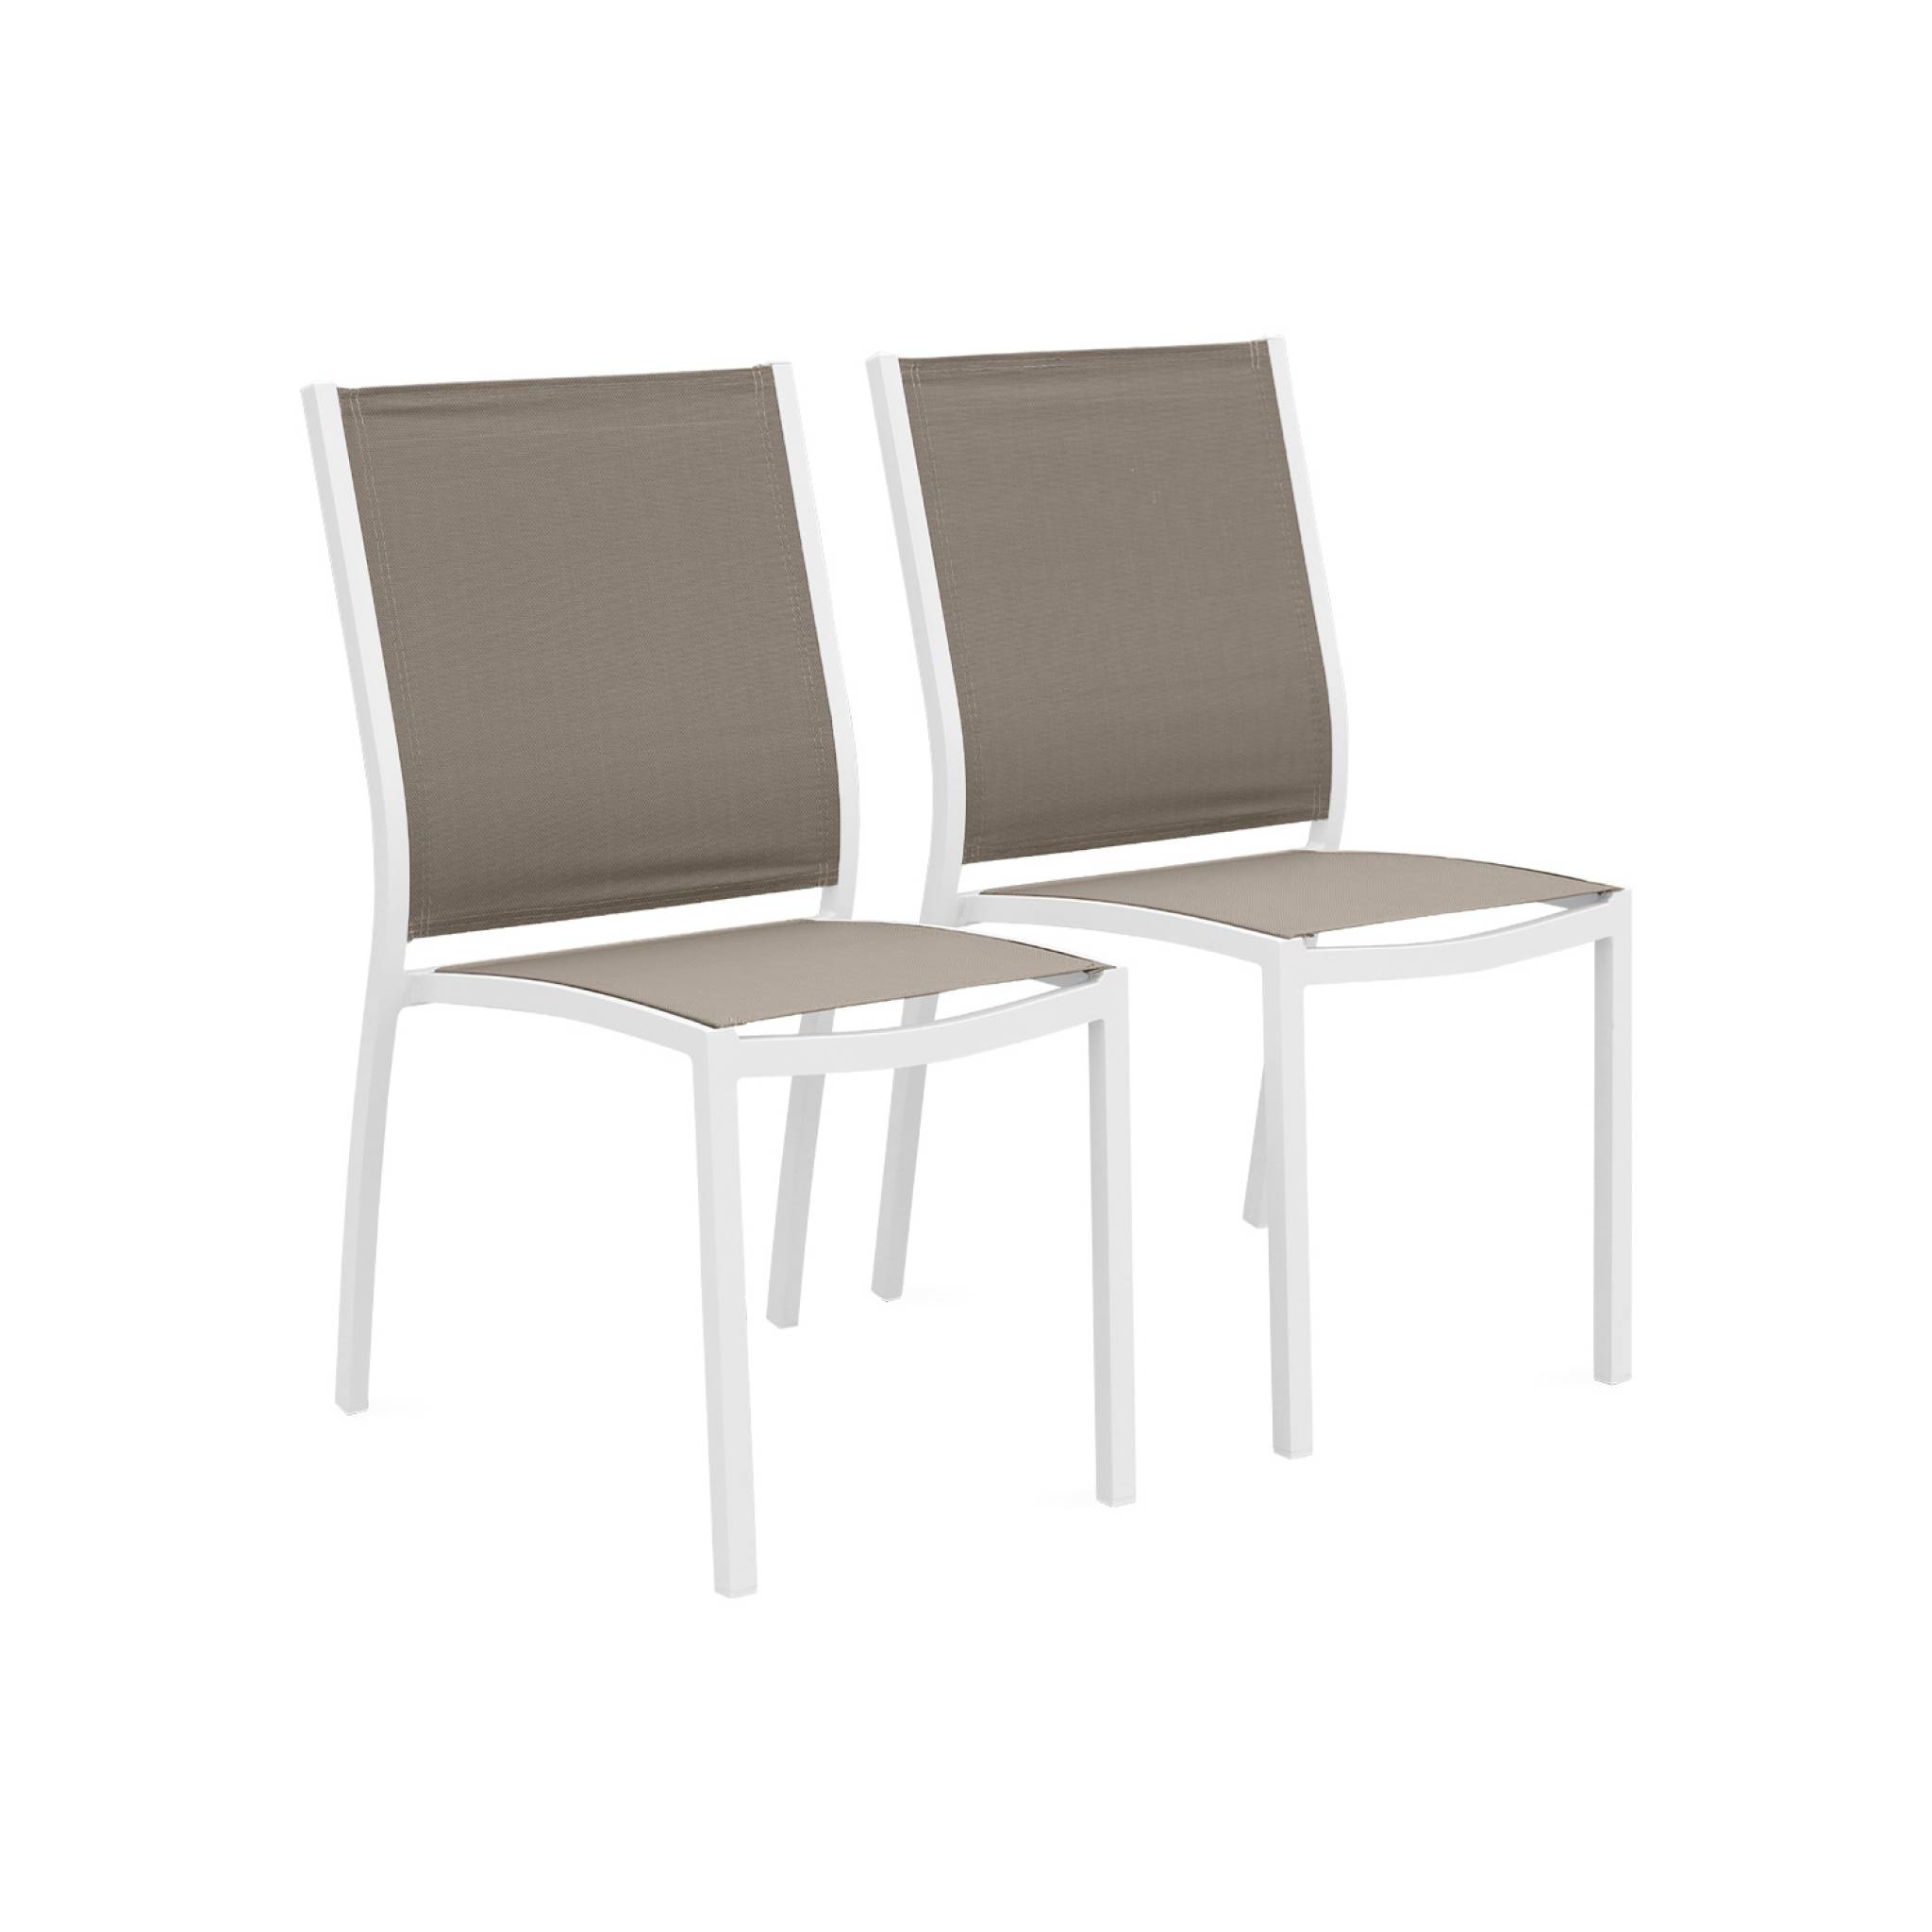 Lot de 2 chaises empilables en aluminium blanc et taupe en textilène